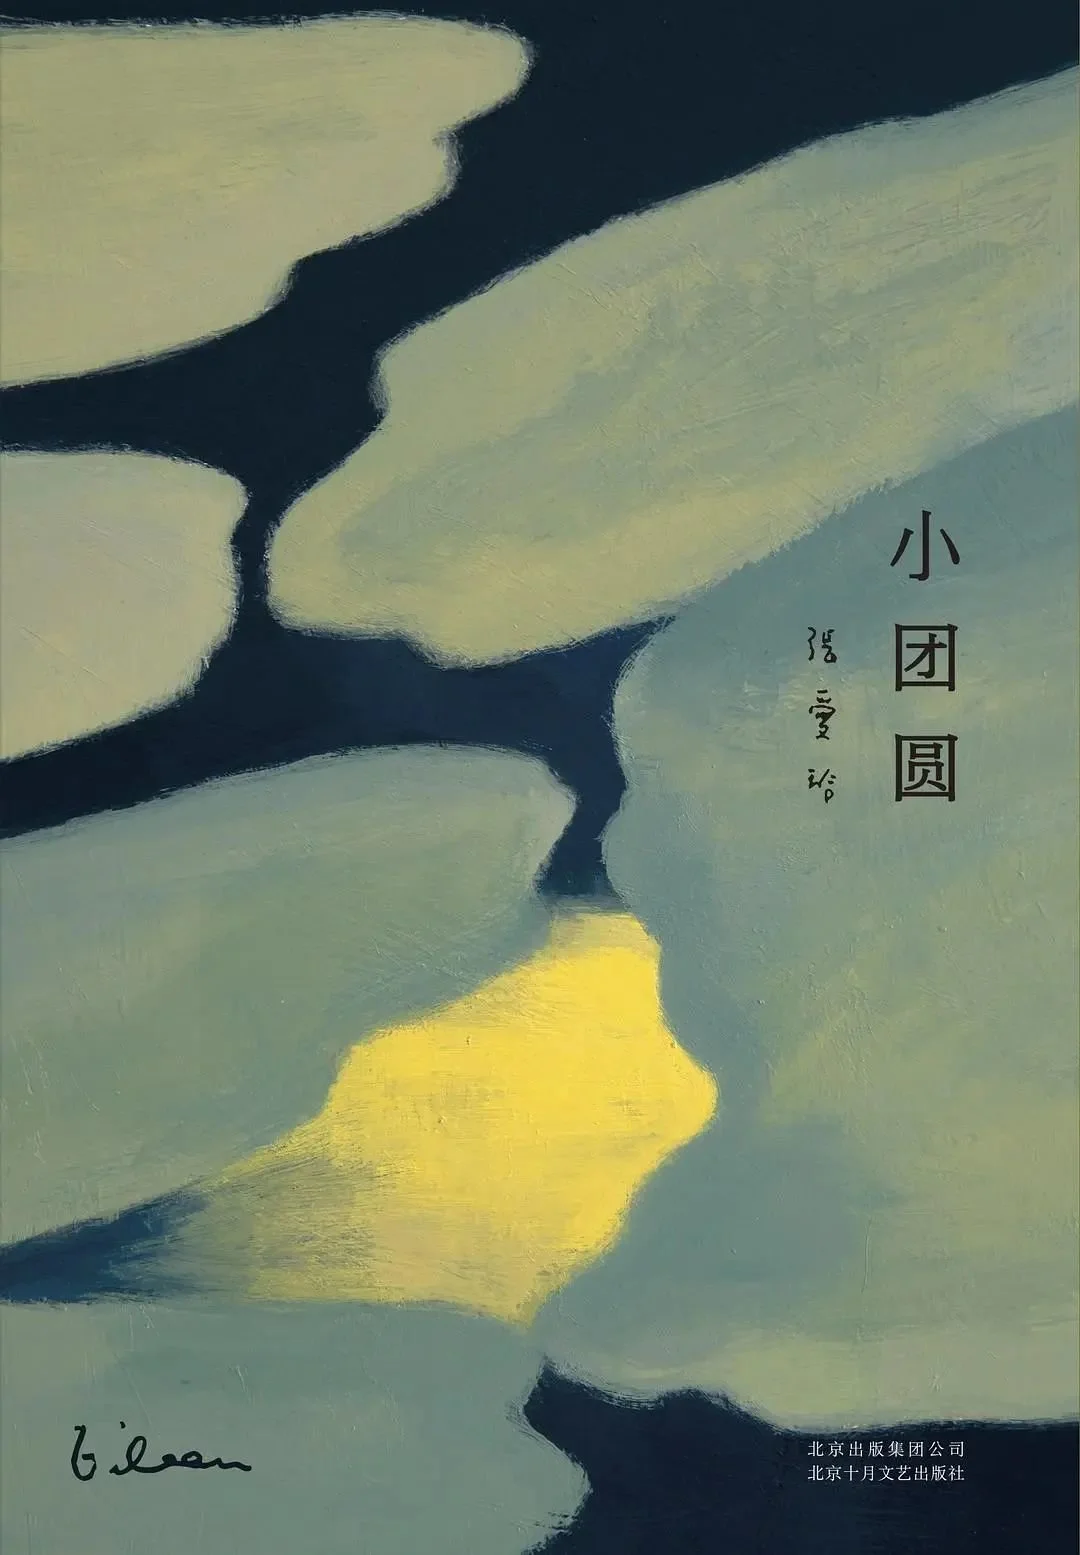 《小团圆》，北京十月文艺出版社